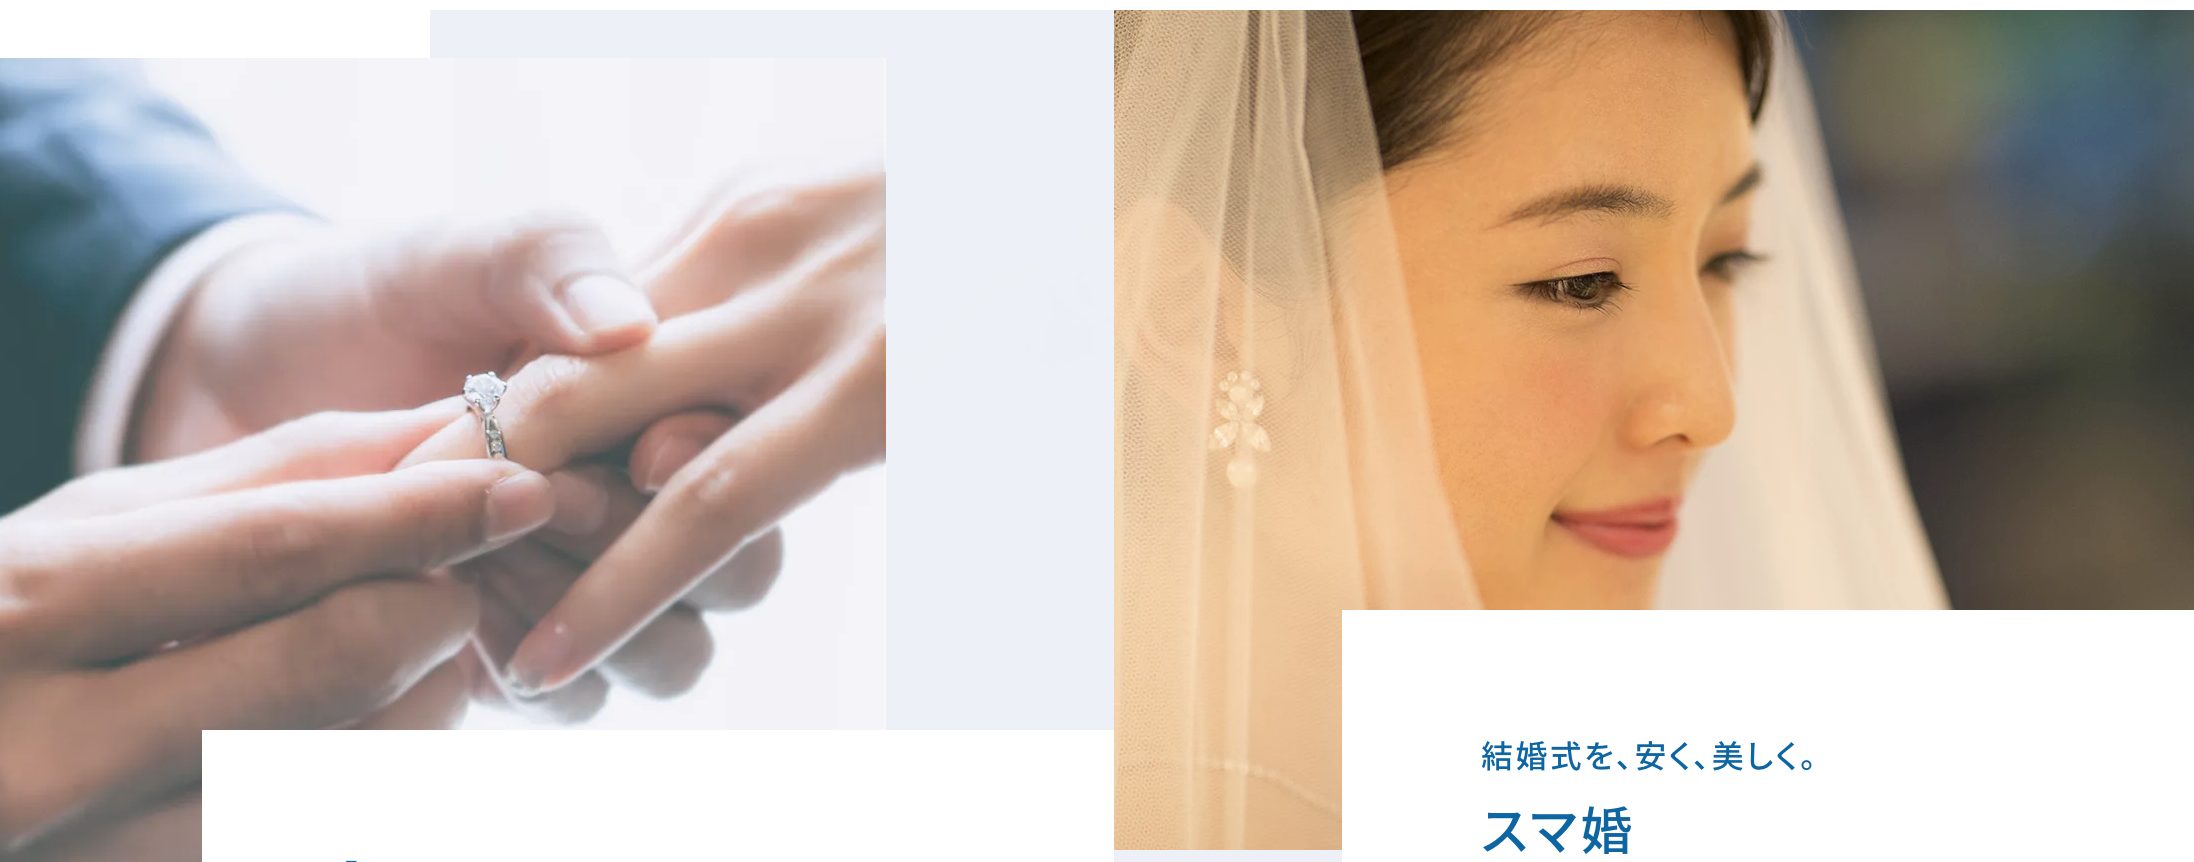 神戸のおすすめ結婚式相談所を徹底比較 あなたに最適な相談所を紹介